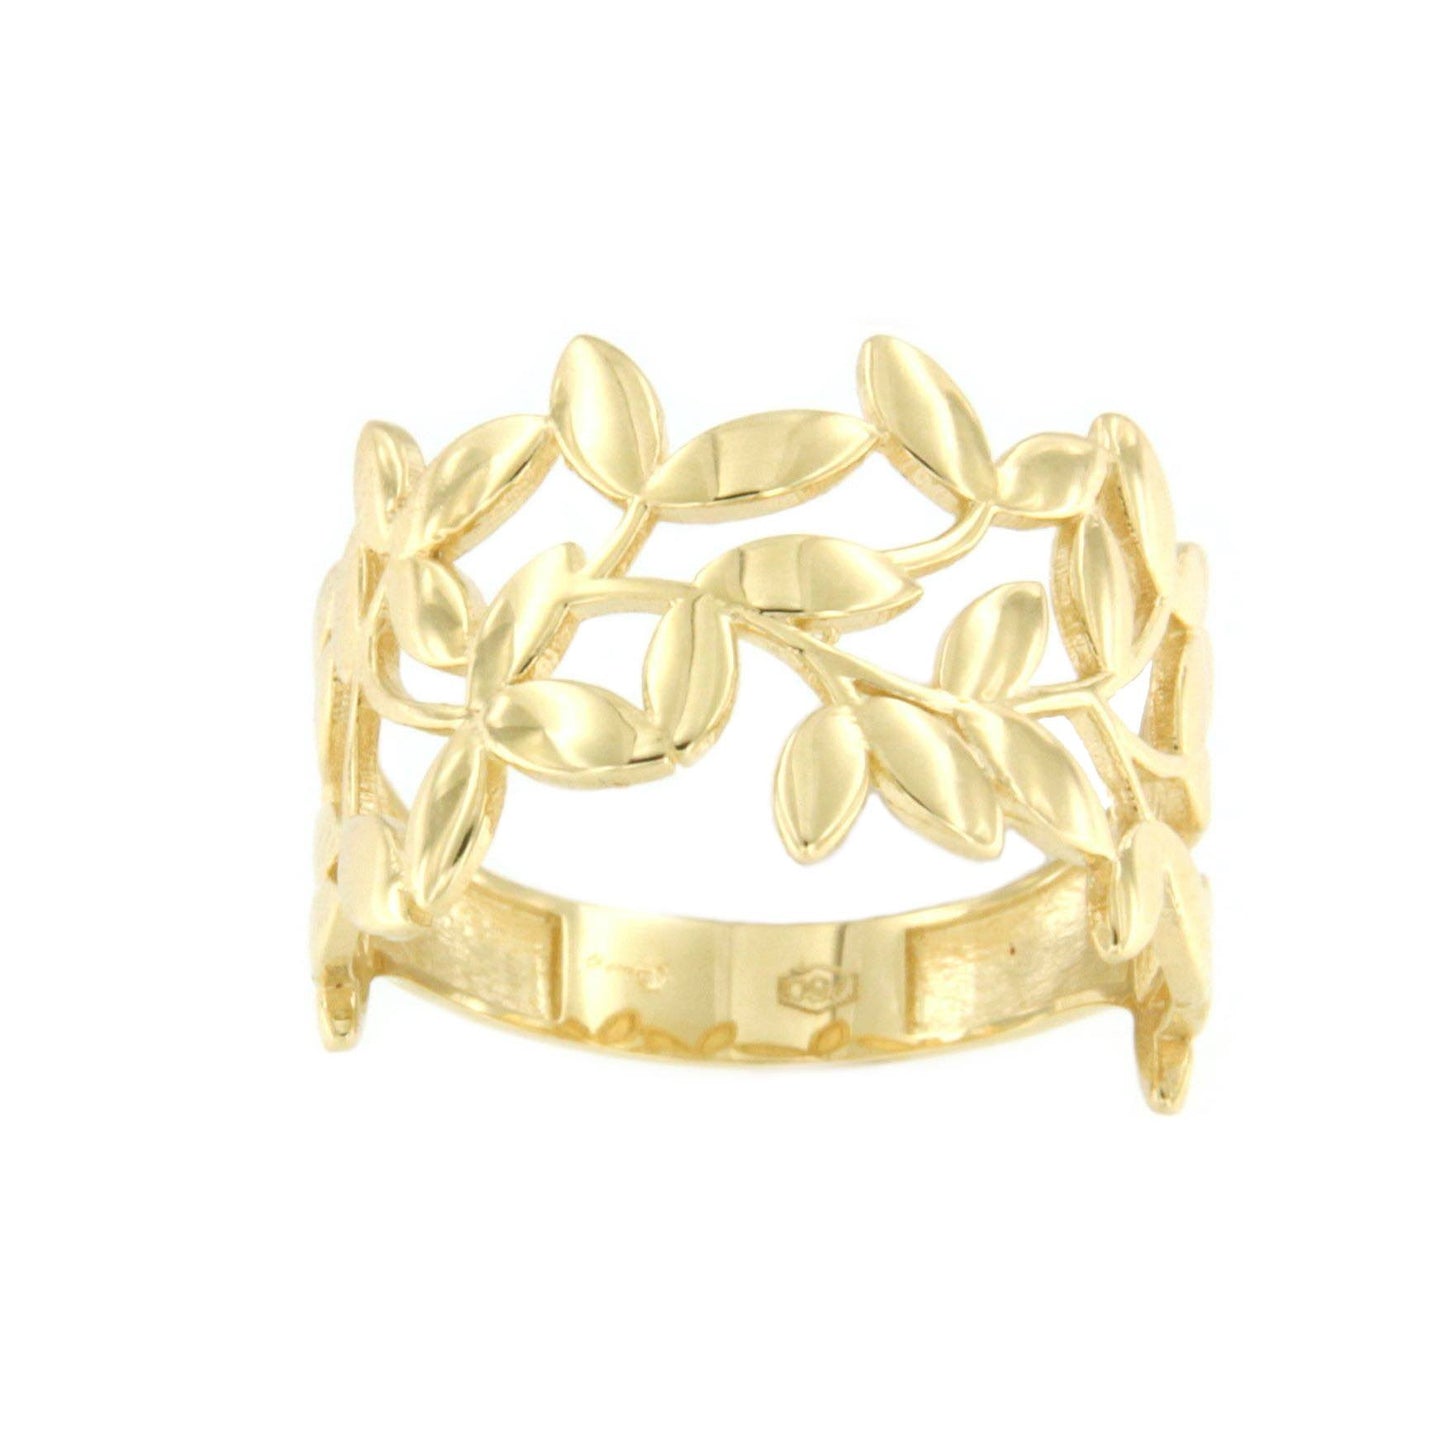 BRESCIA anillo de oro amarillo 18 kilates con motivos hojas - Roman Joyero